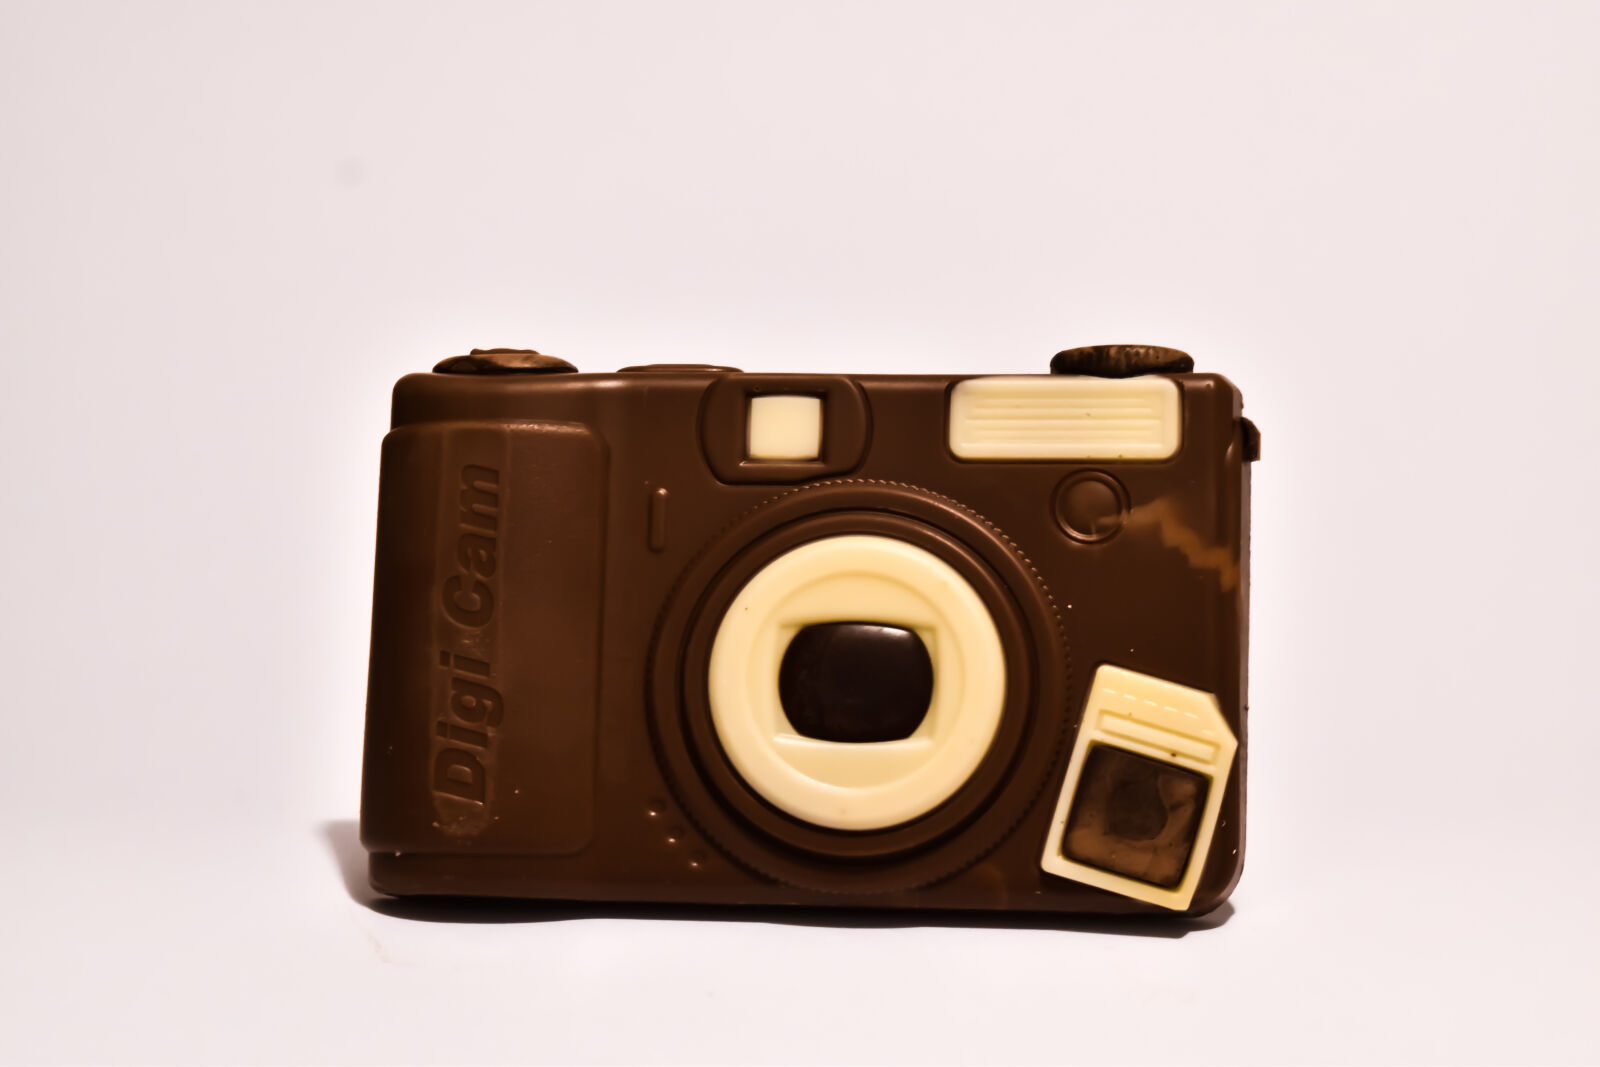 Nikon D5500 + Nikon AF-S DX Nikkor 18-55mm F3.5-5.6G VR II sample photo. Camera, chocolate, digital photography